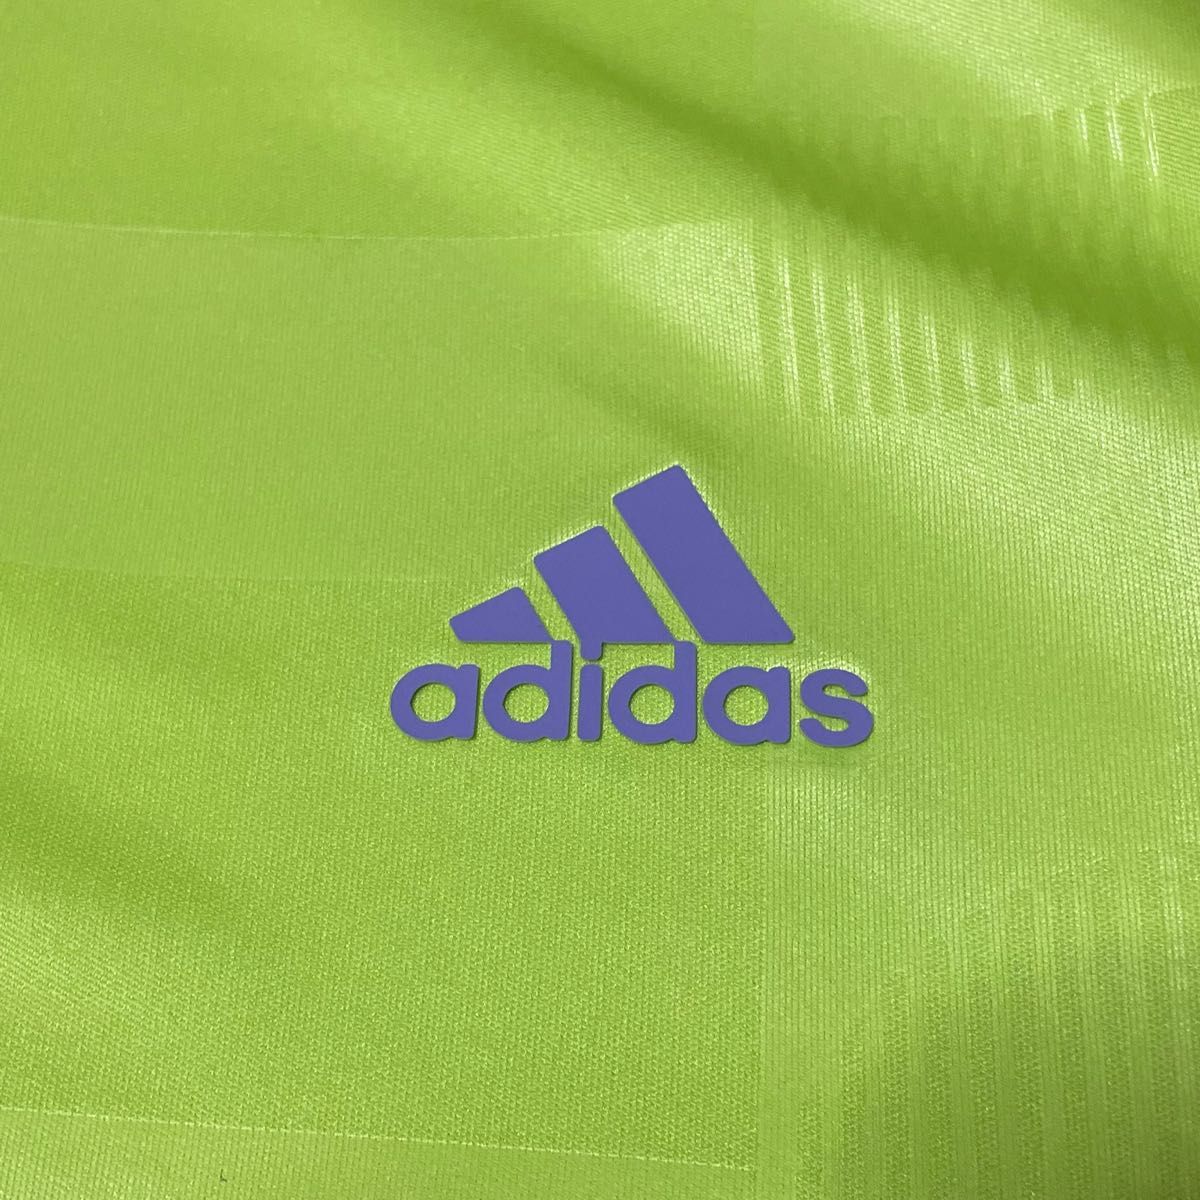 adidas GOLF ゴルフ 半袖ポロシャツ。ライムグリーン、サイズO(LL)。新品未使用です。夏ゴルフに如何でしょうか。